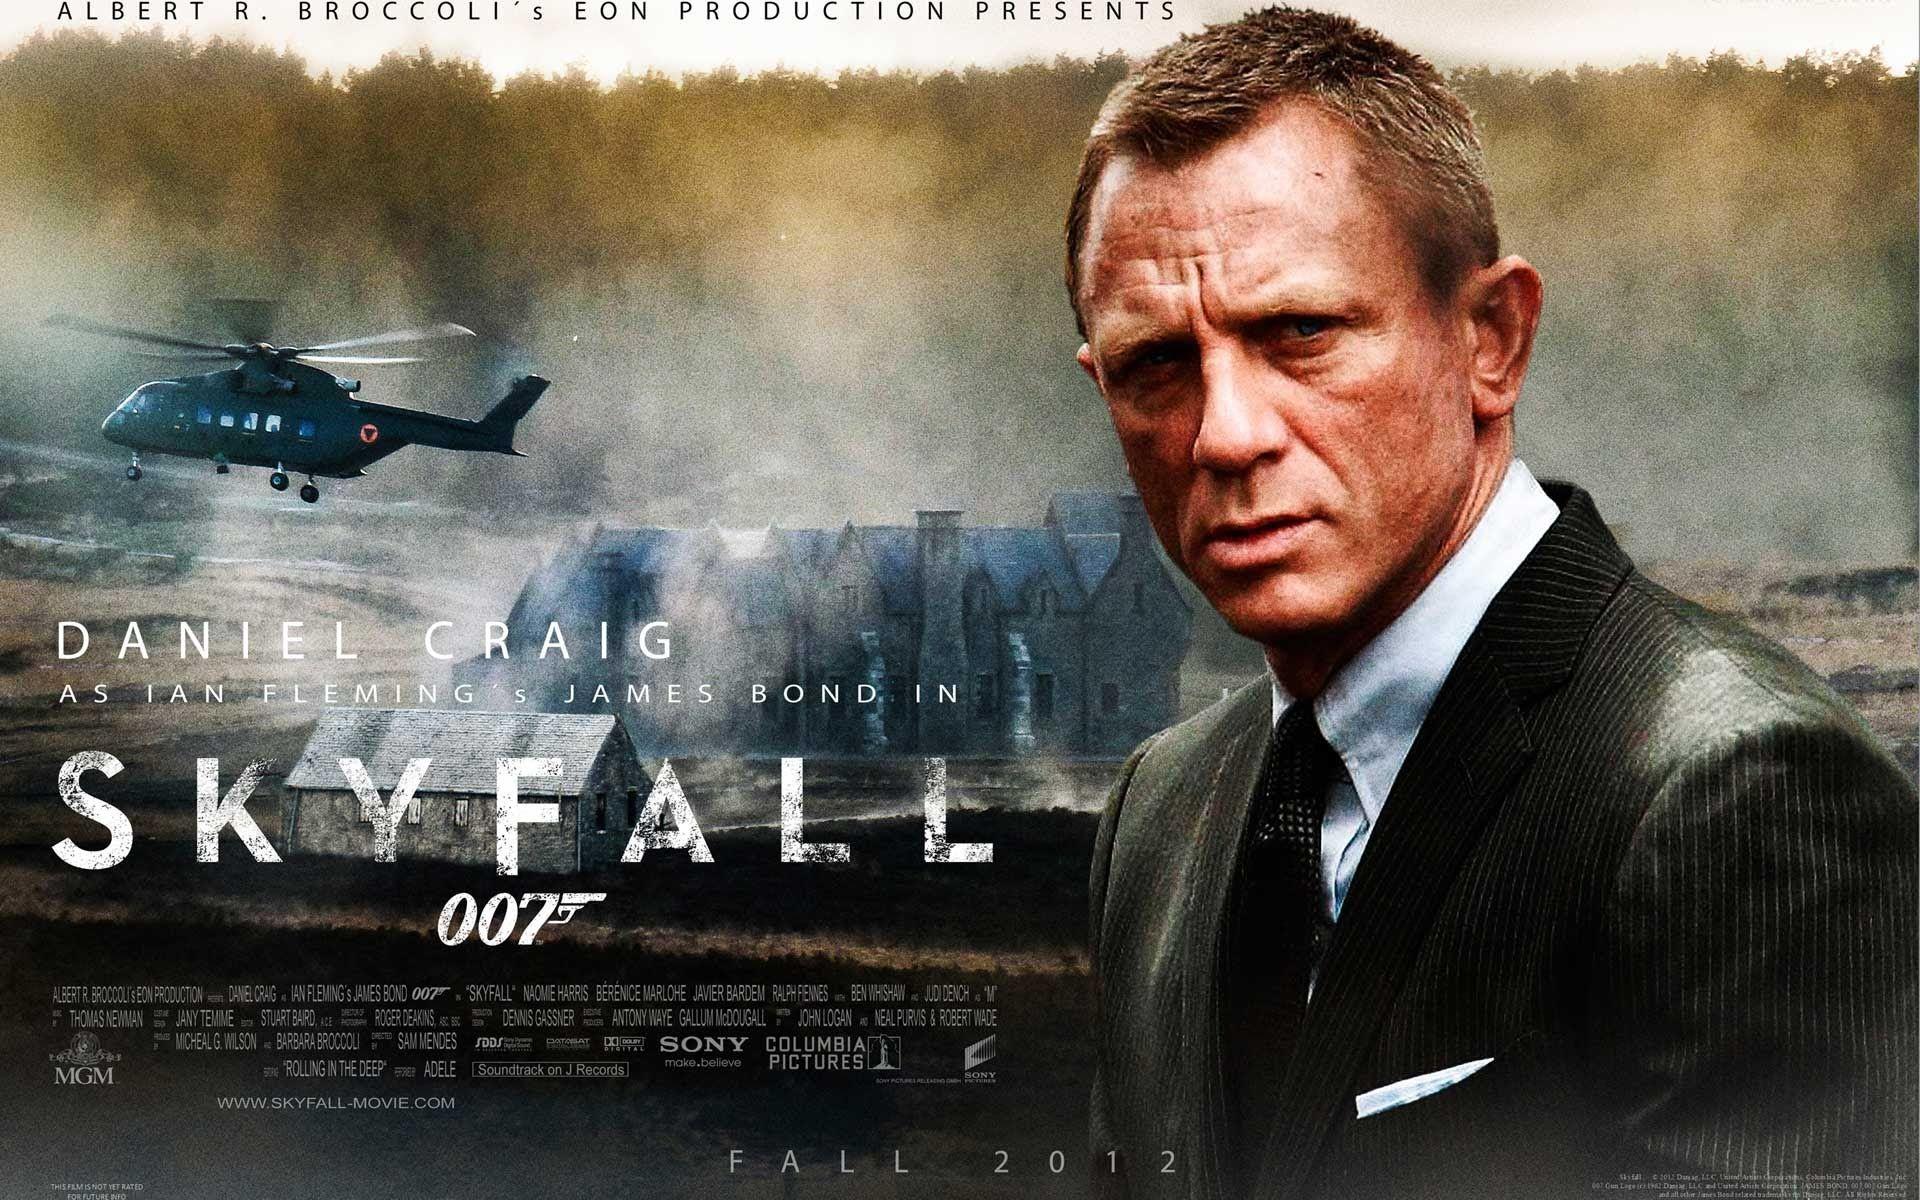 James Bond: Agent 007 Skyfall 2012!!